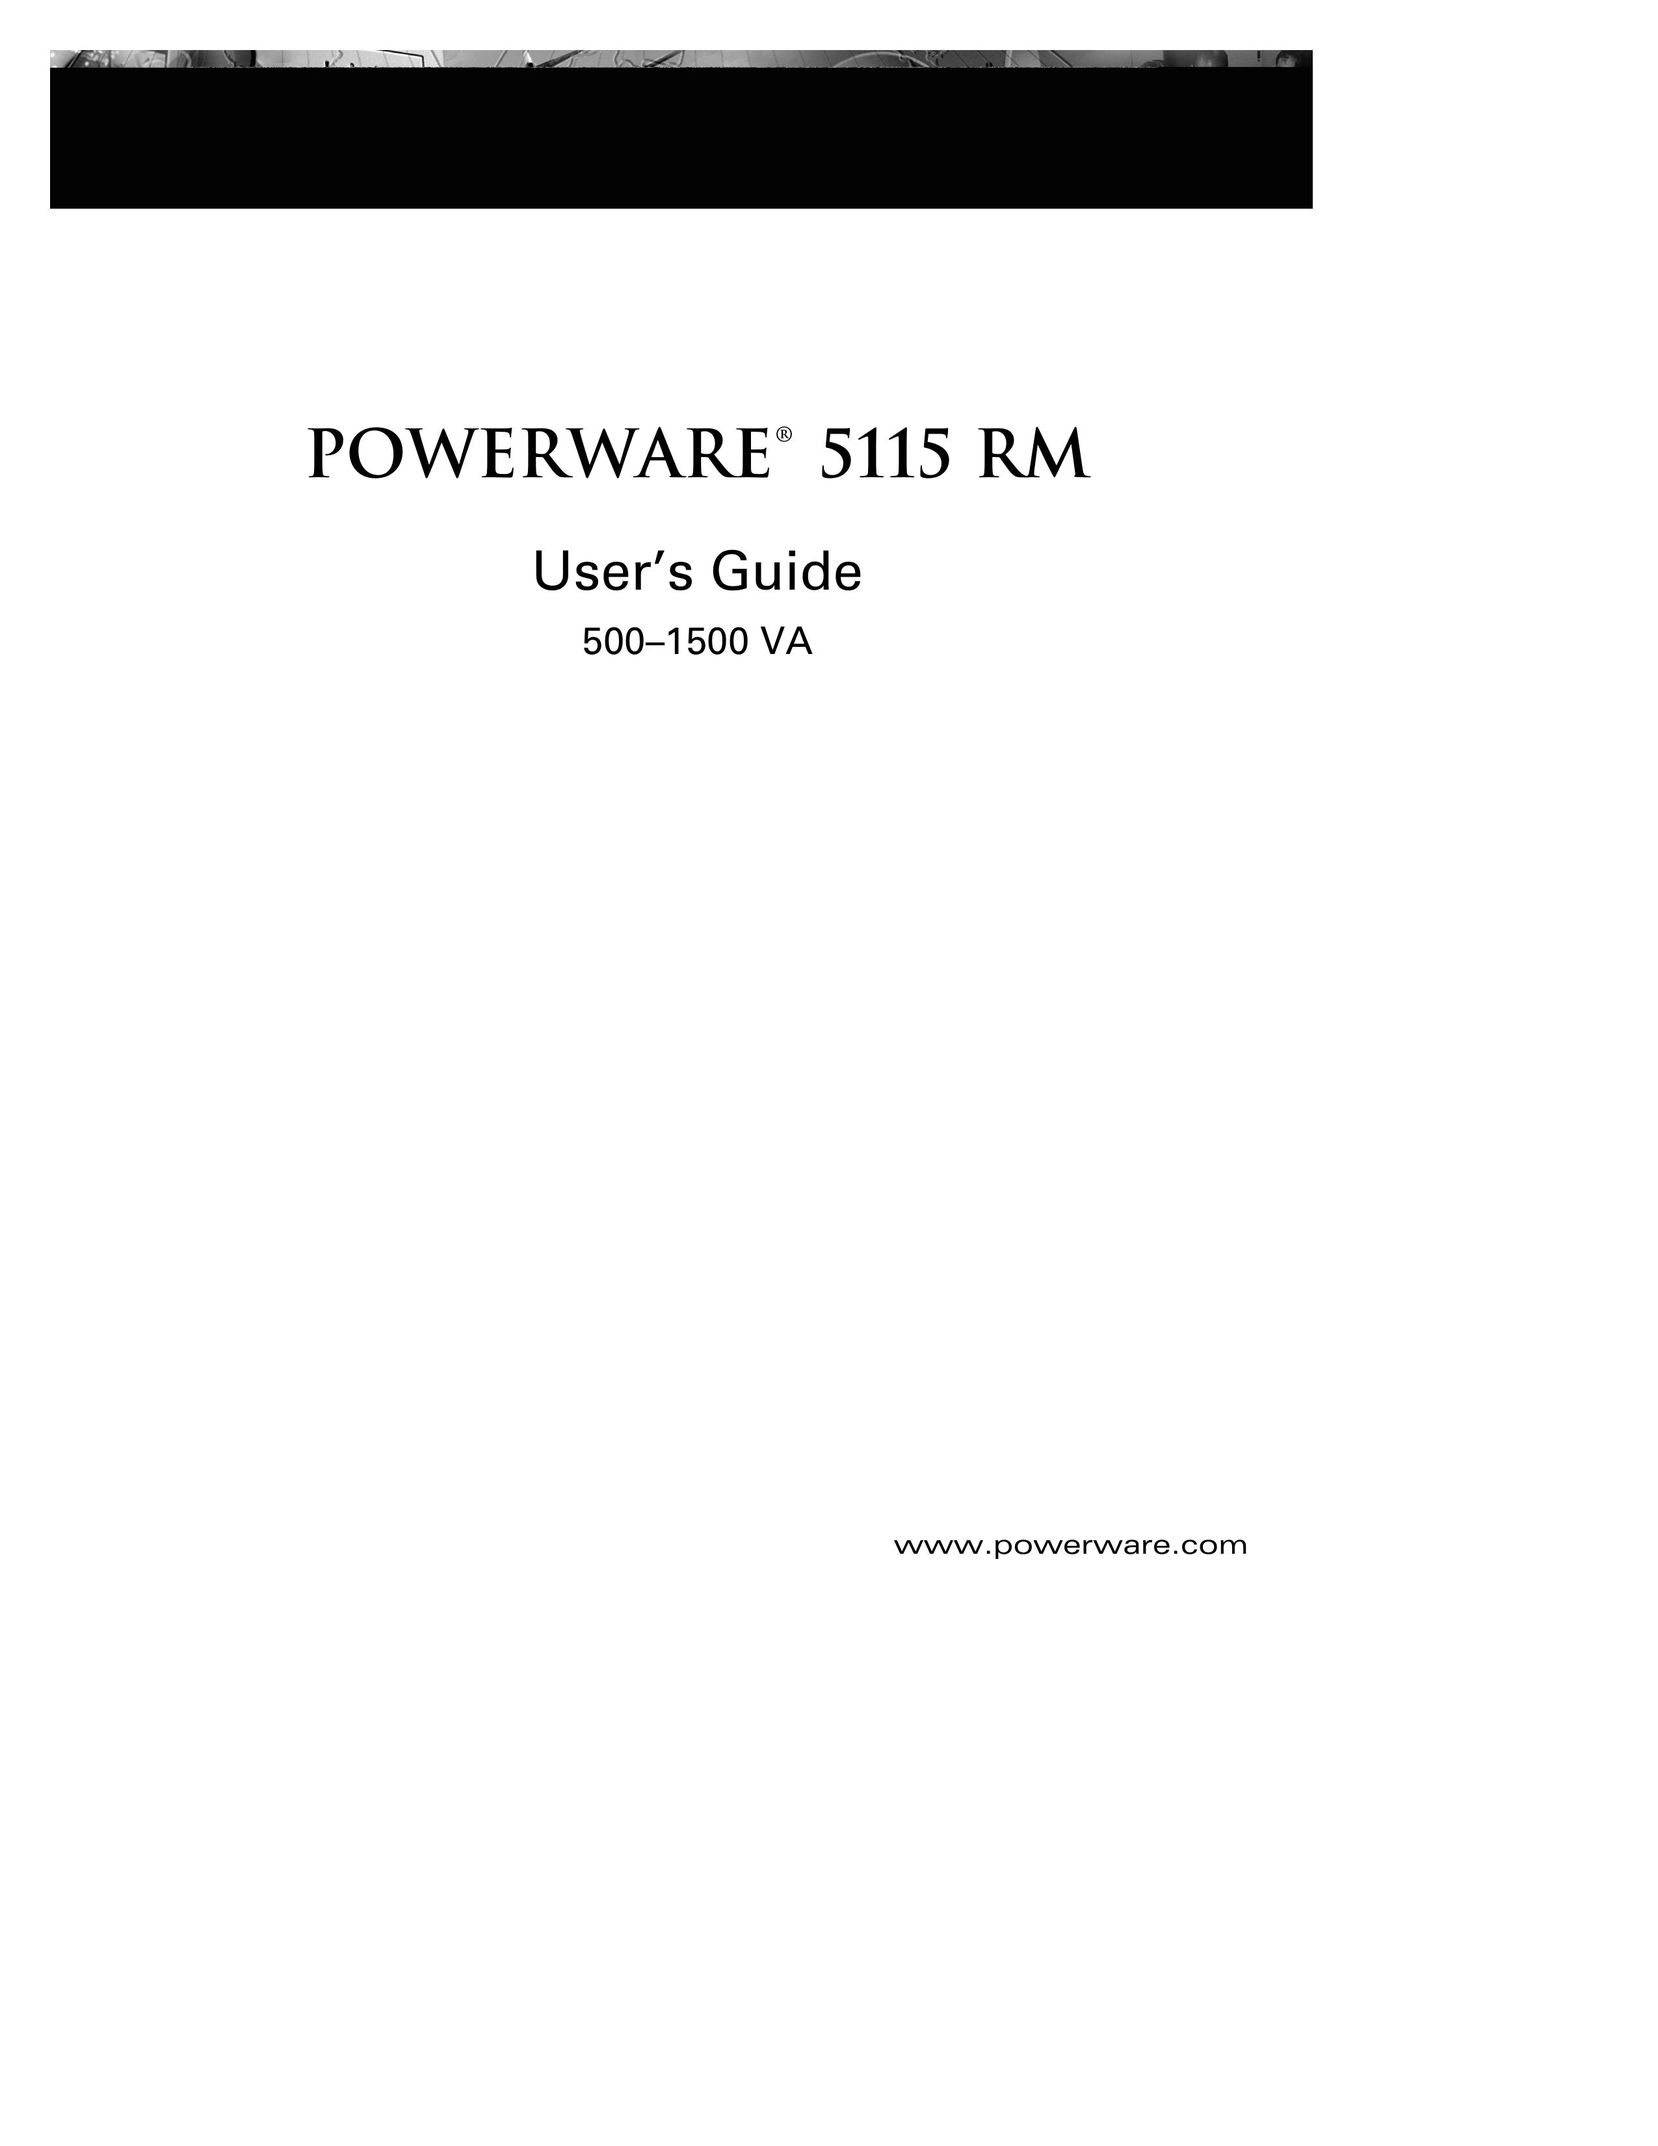 Powerware 5115 RM Network Card User Manual